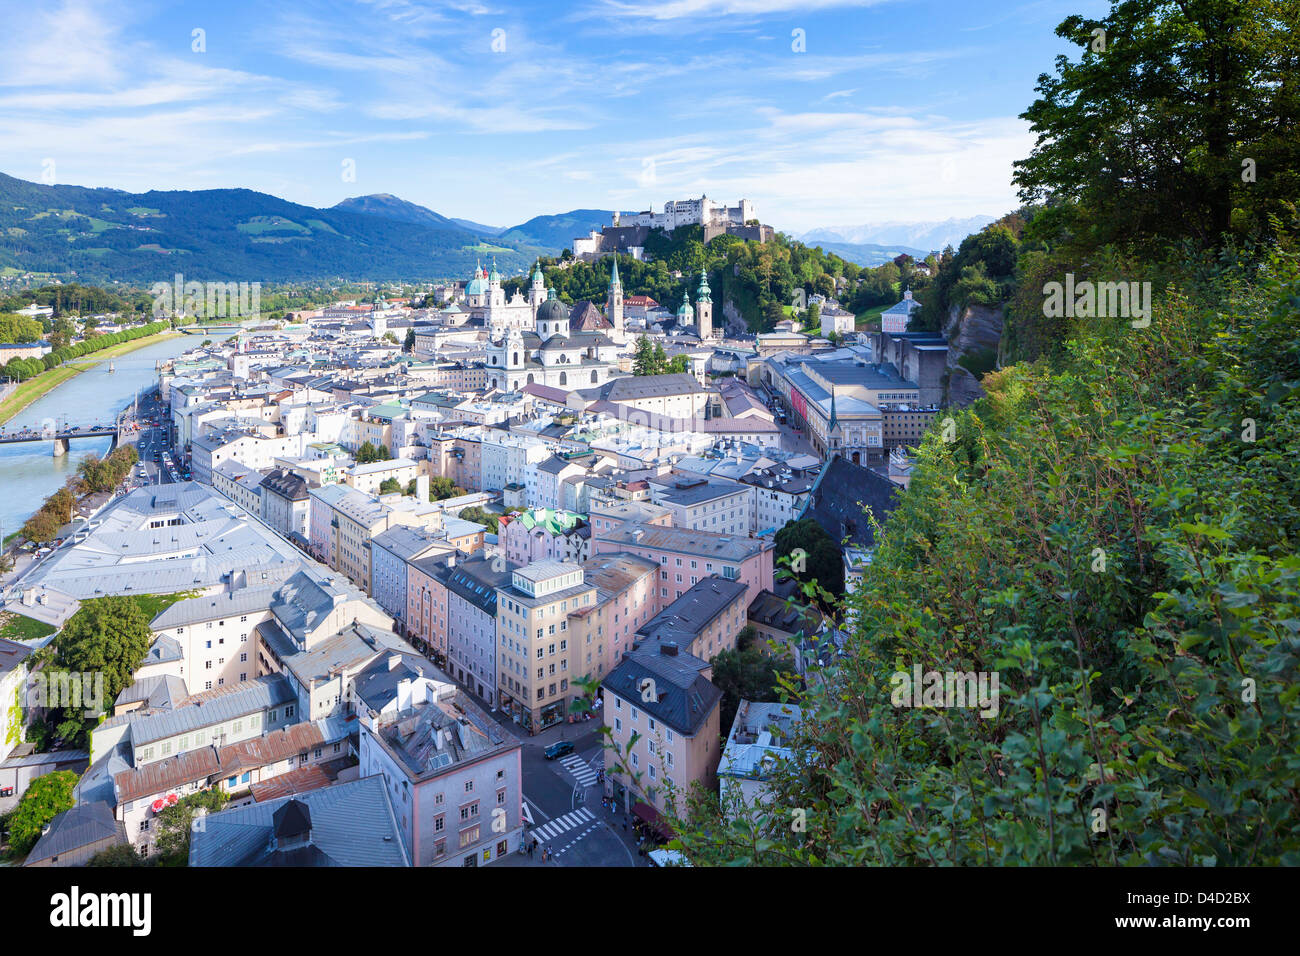 Vista desde Moenchsberg del casco antiguo de Salzburgo, Austria Foto de stock